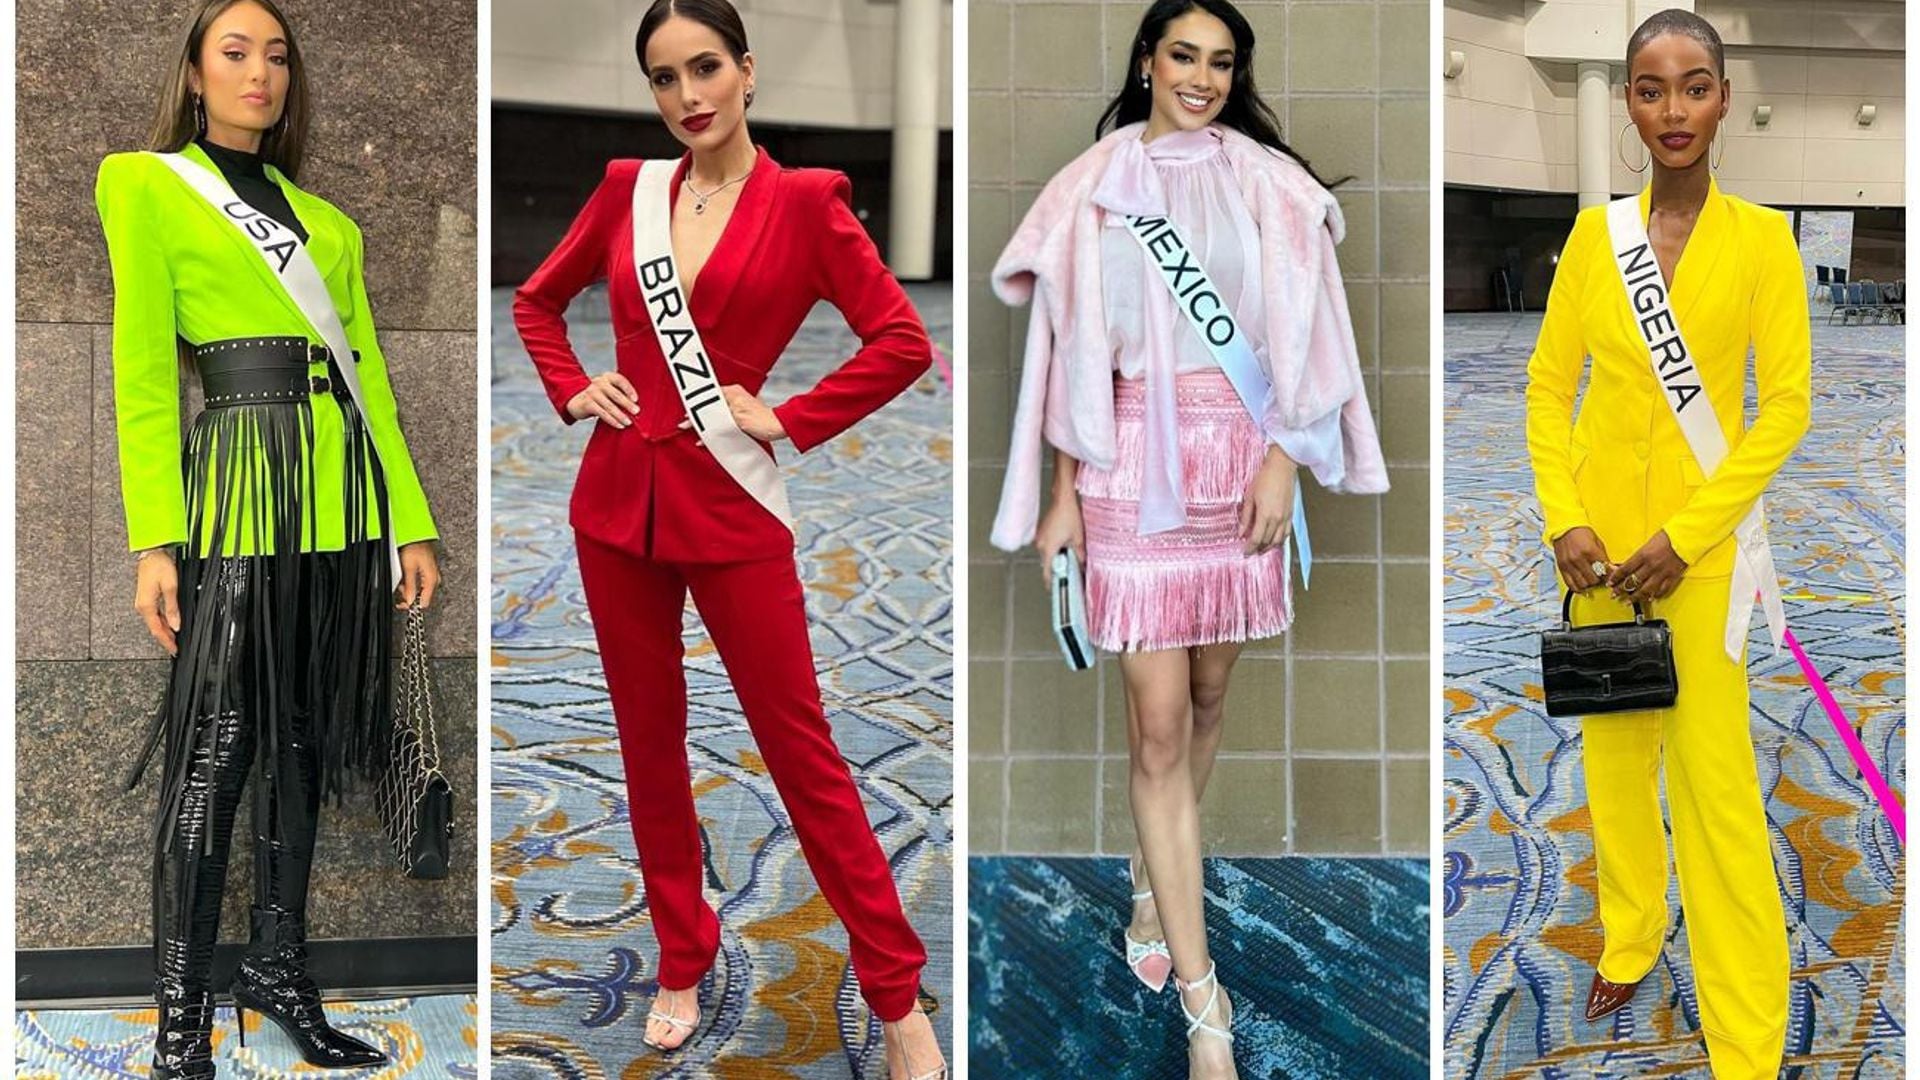 Ellas son las 10 favoritas para ganar Miss Universe, según Andrea Meza